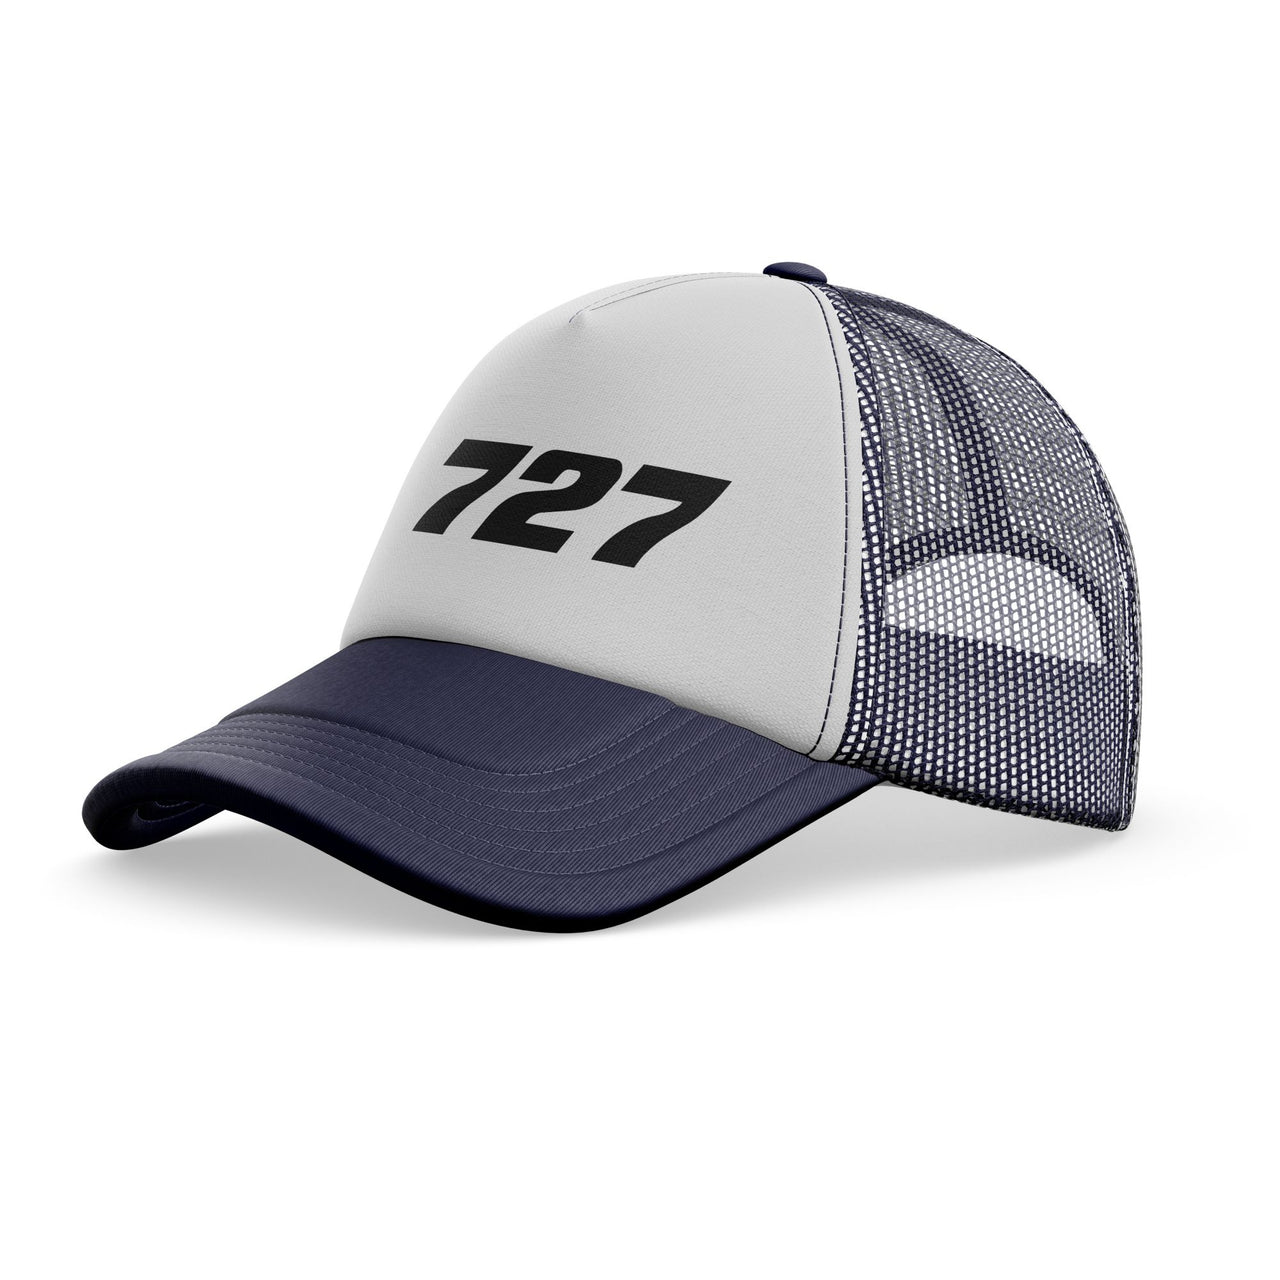 727 Flat Text Designed Trucker Caps & Hats